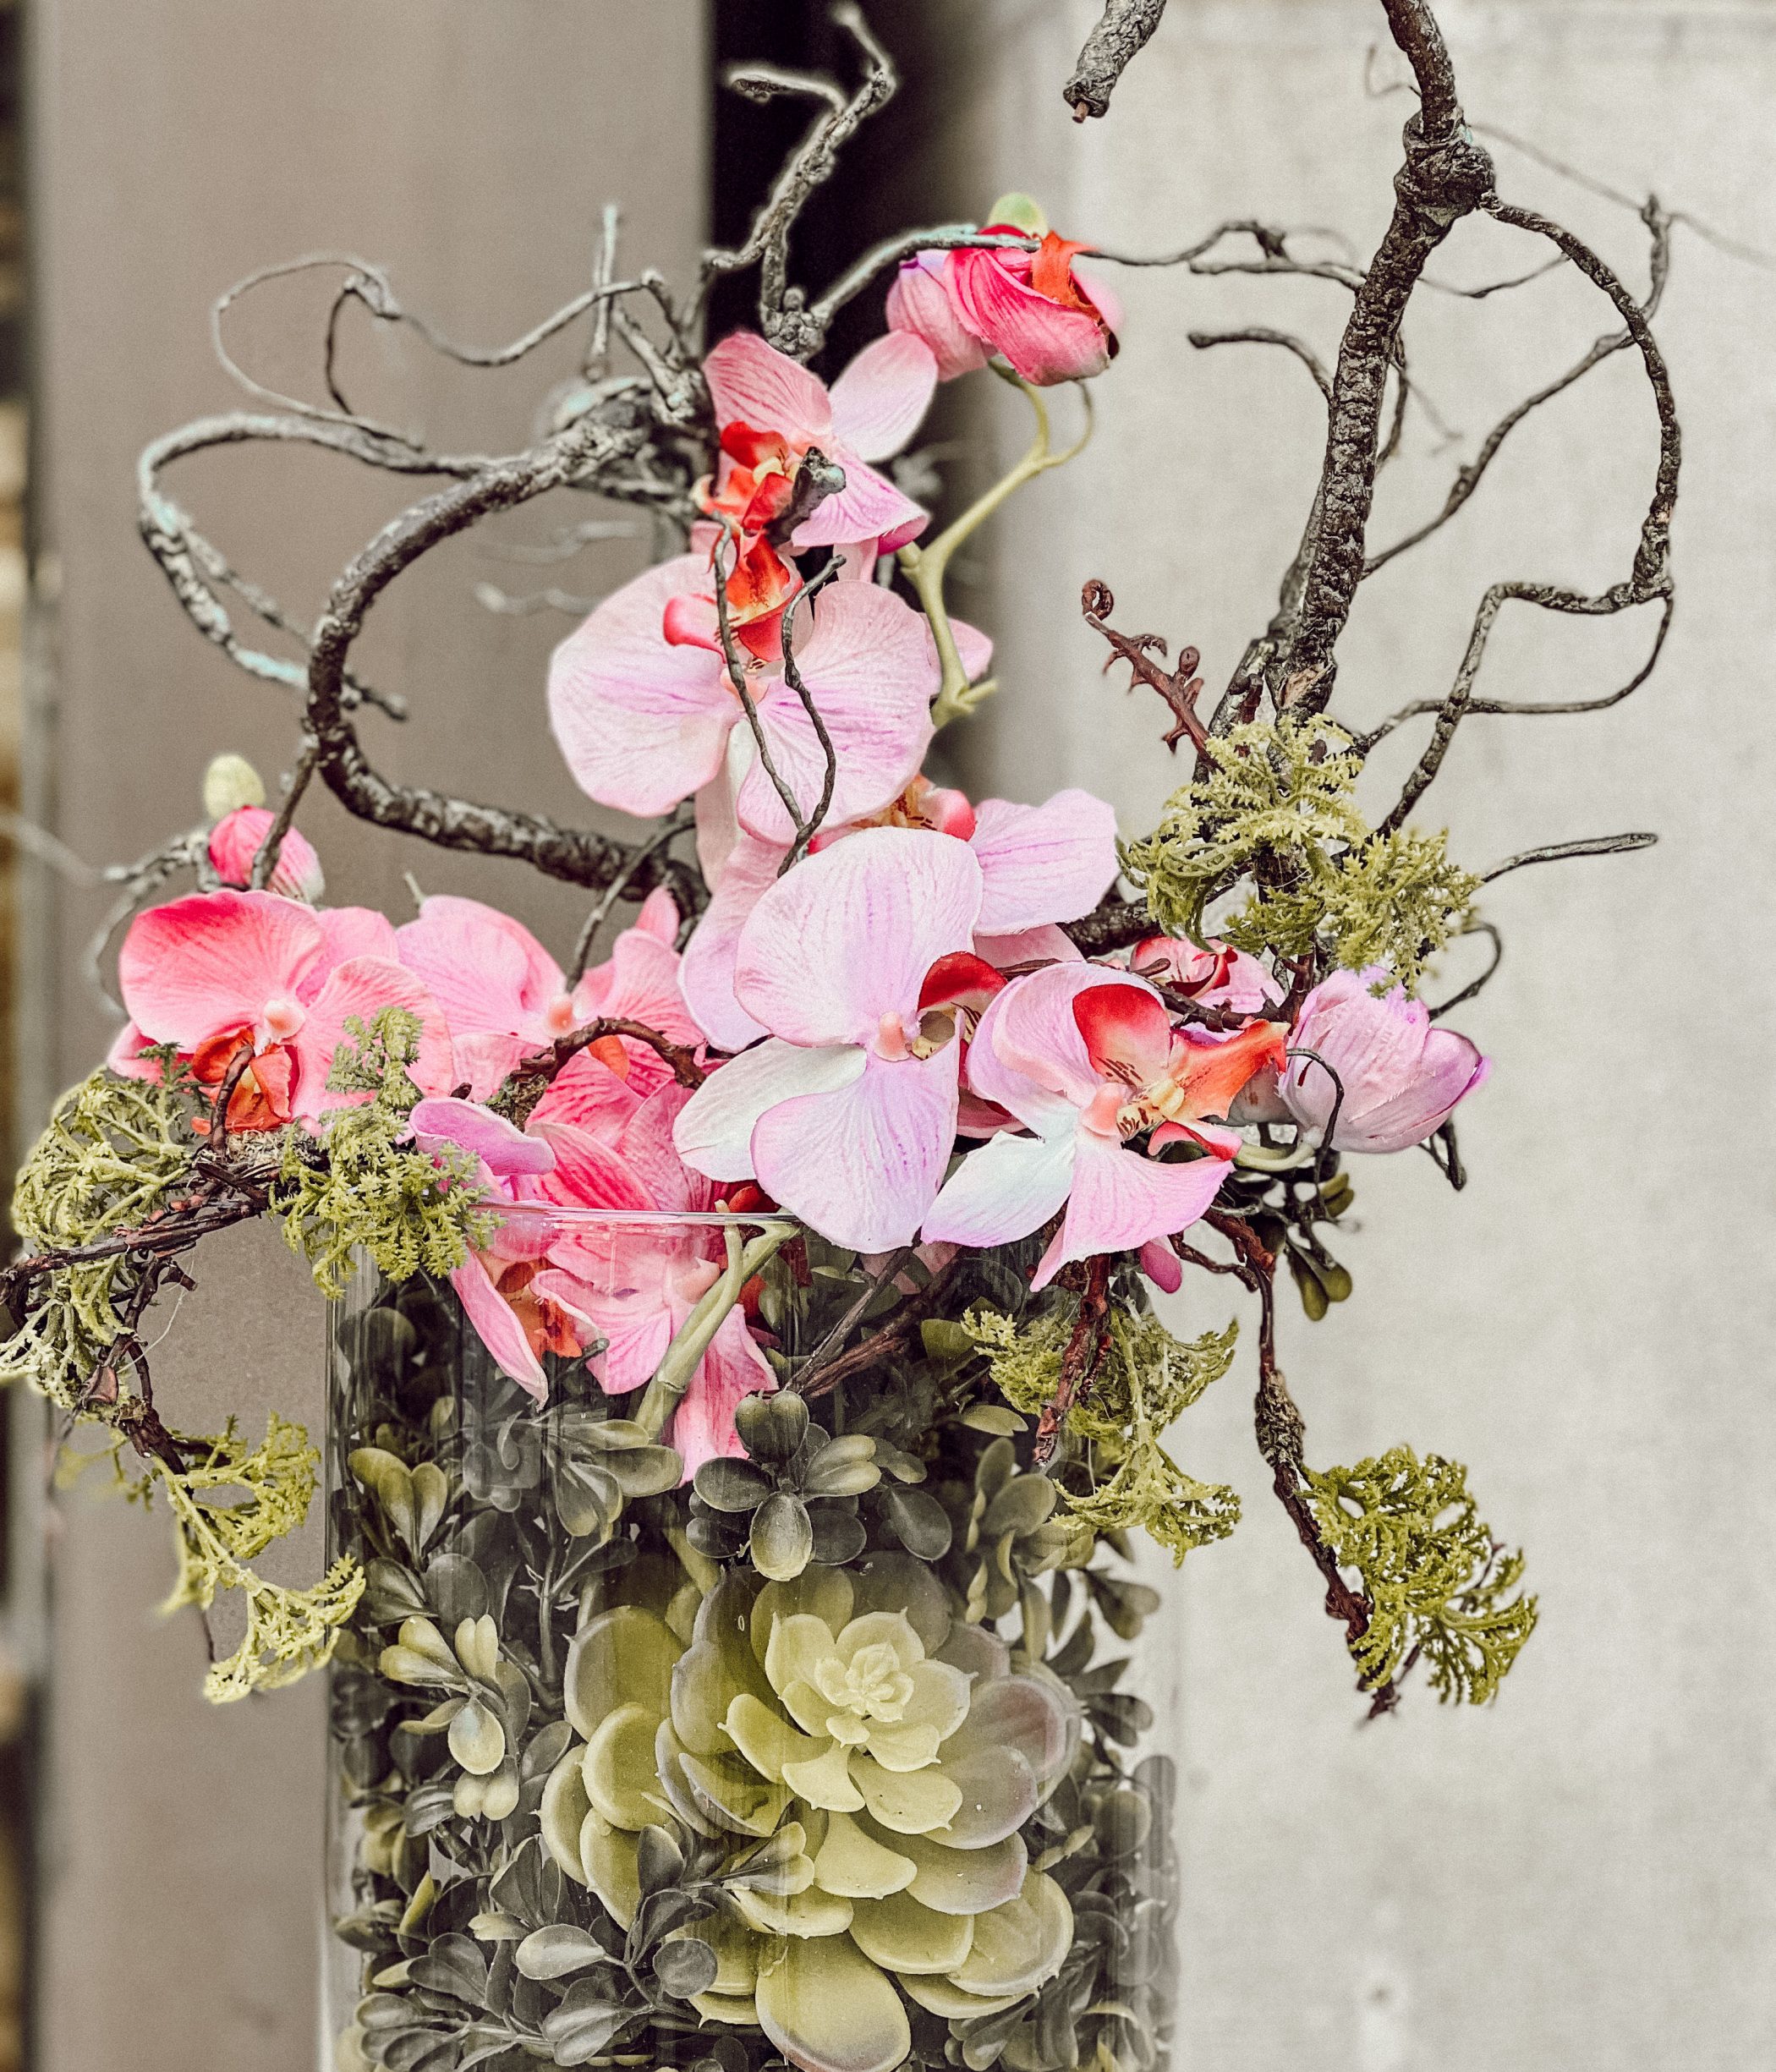 Blumengesteck in einer Vase mit rosa Orchideen, Zweigen, Moos und Buchszweigen